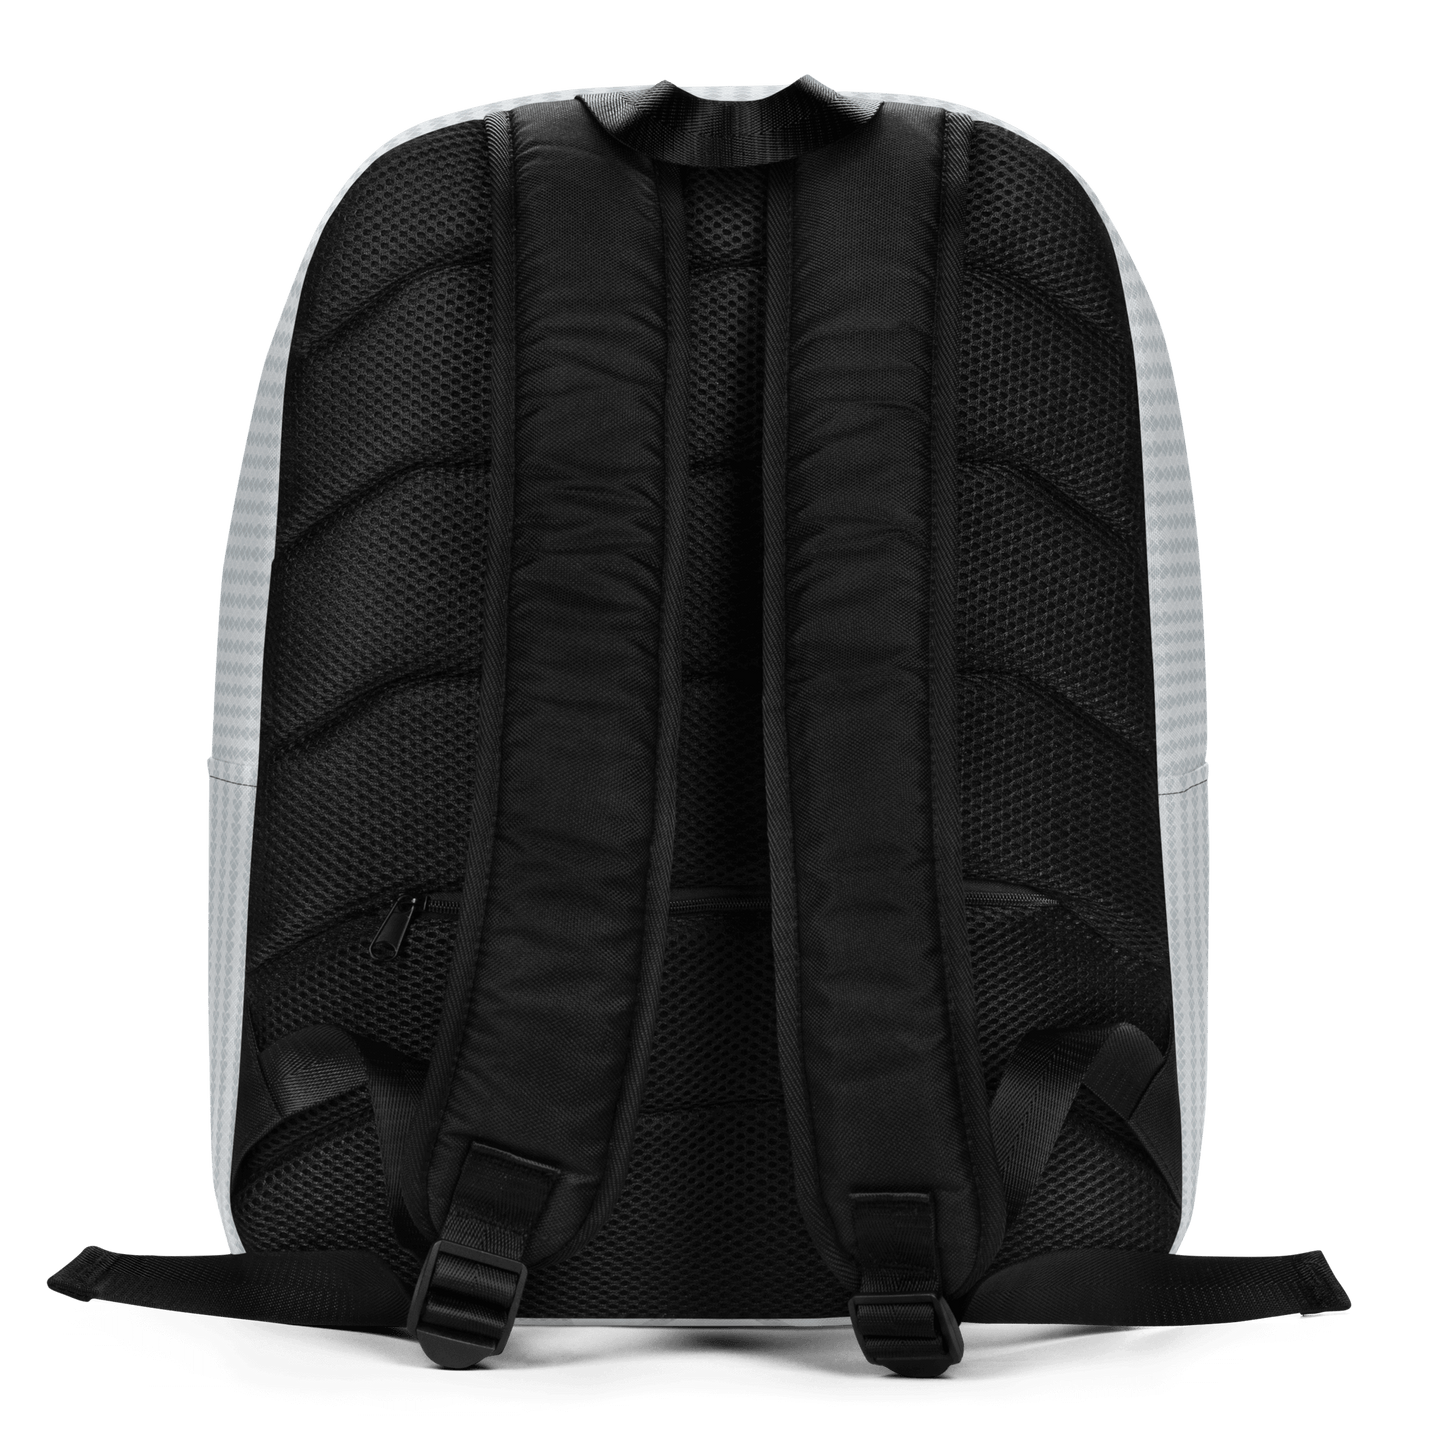 CRiZ AMOR's trendy genderless backpack in light gray